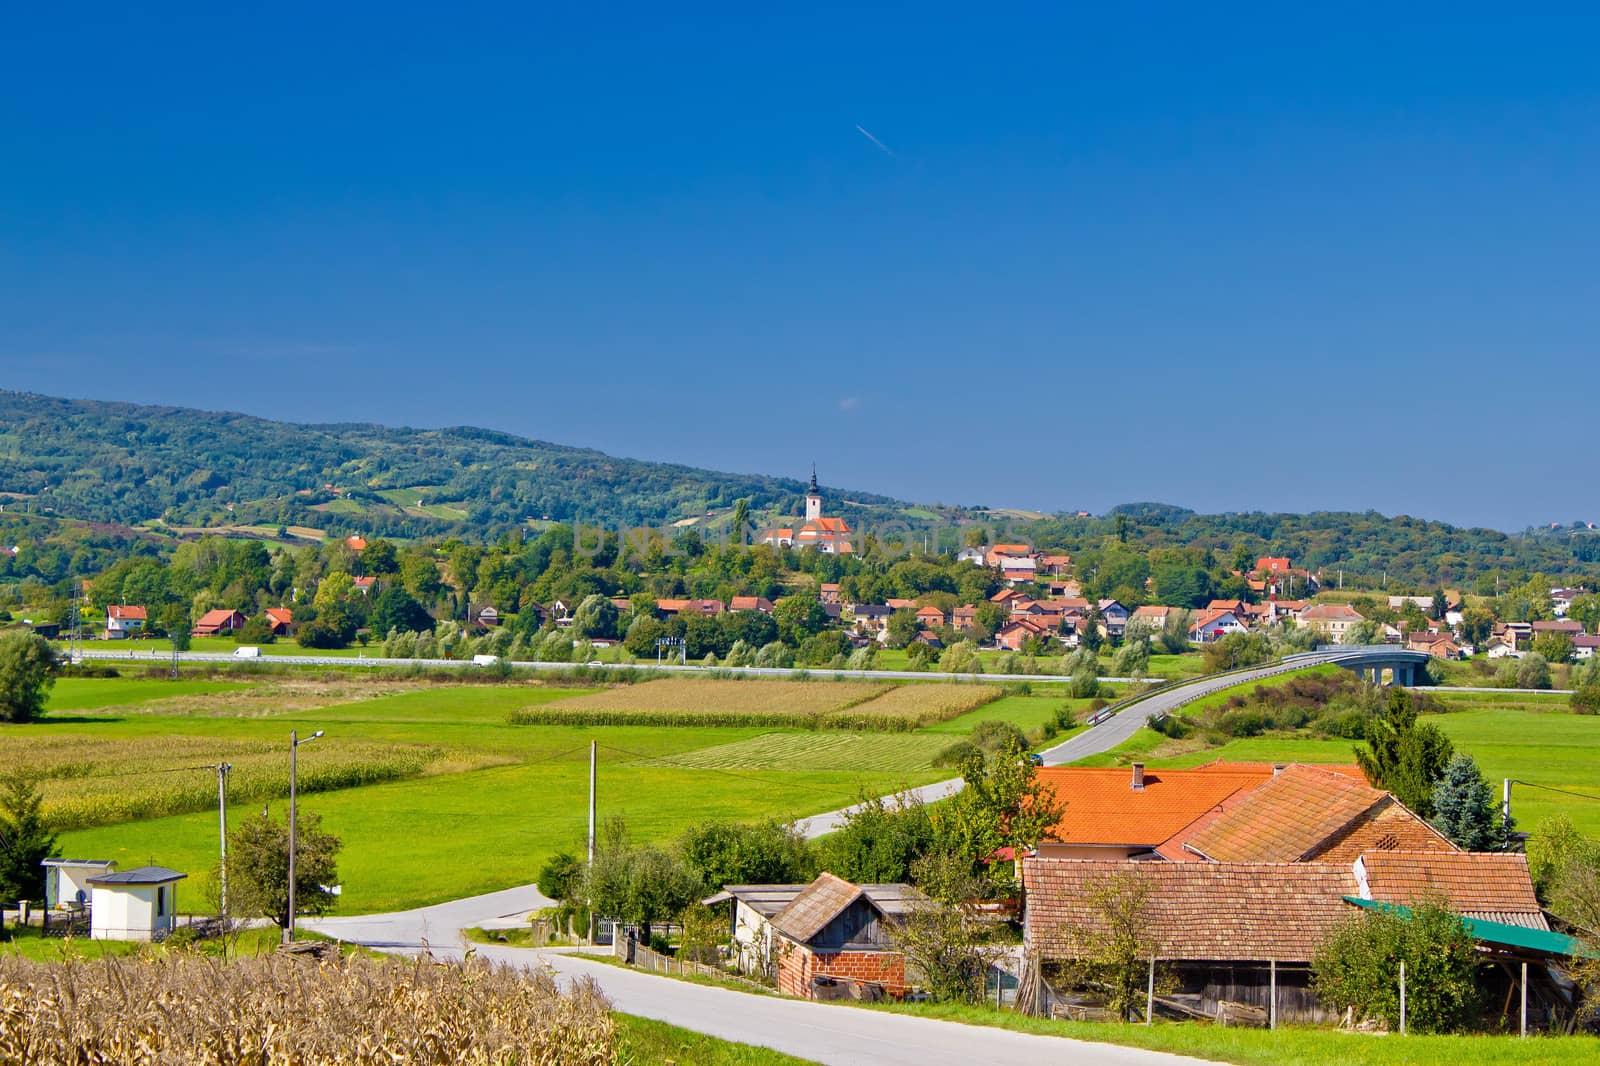 Village of Komin green landscape, Prigorje region, Croatia